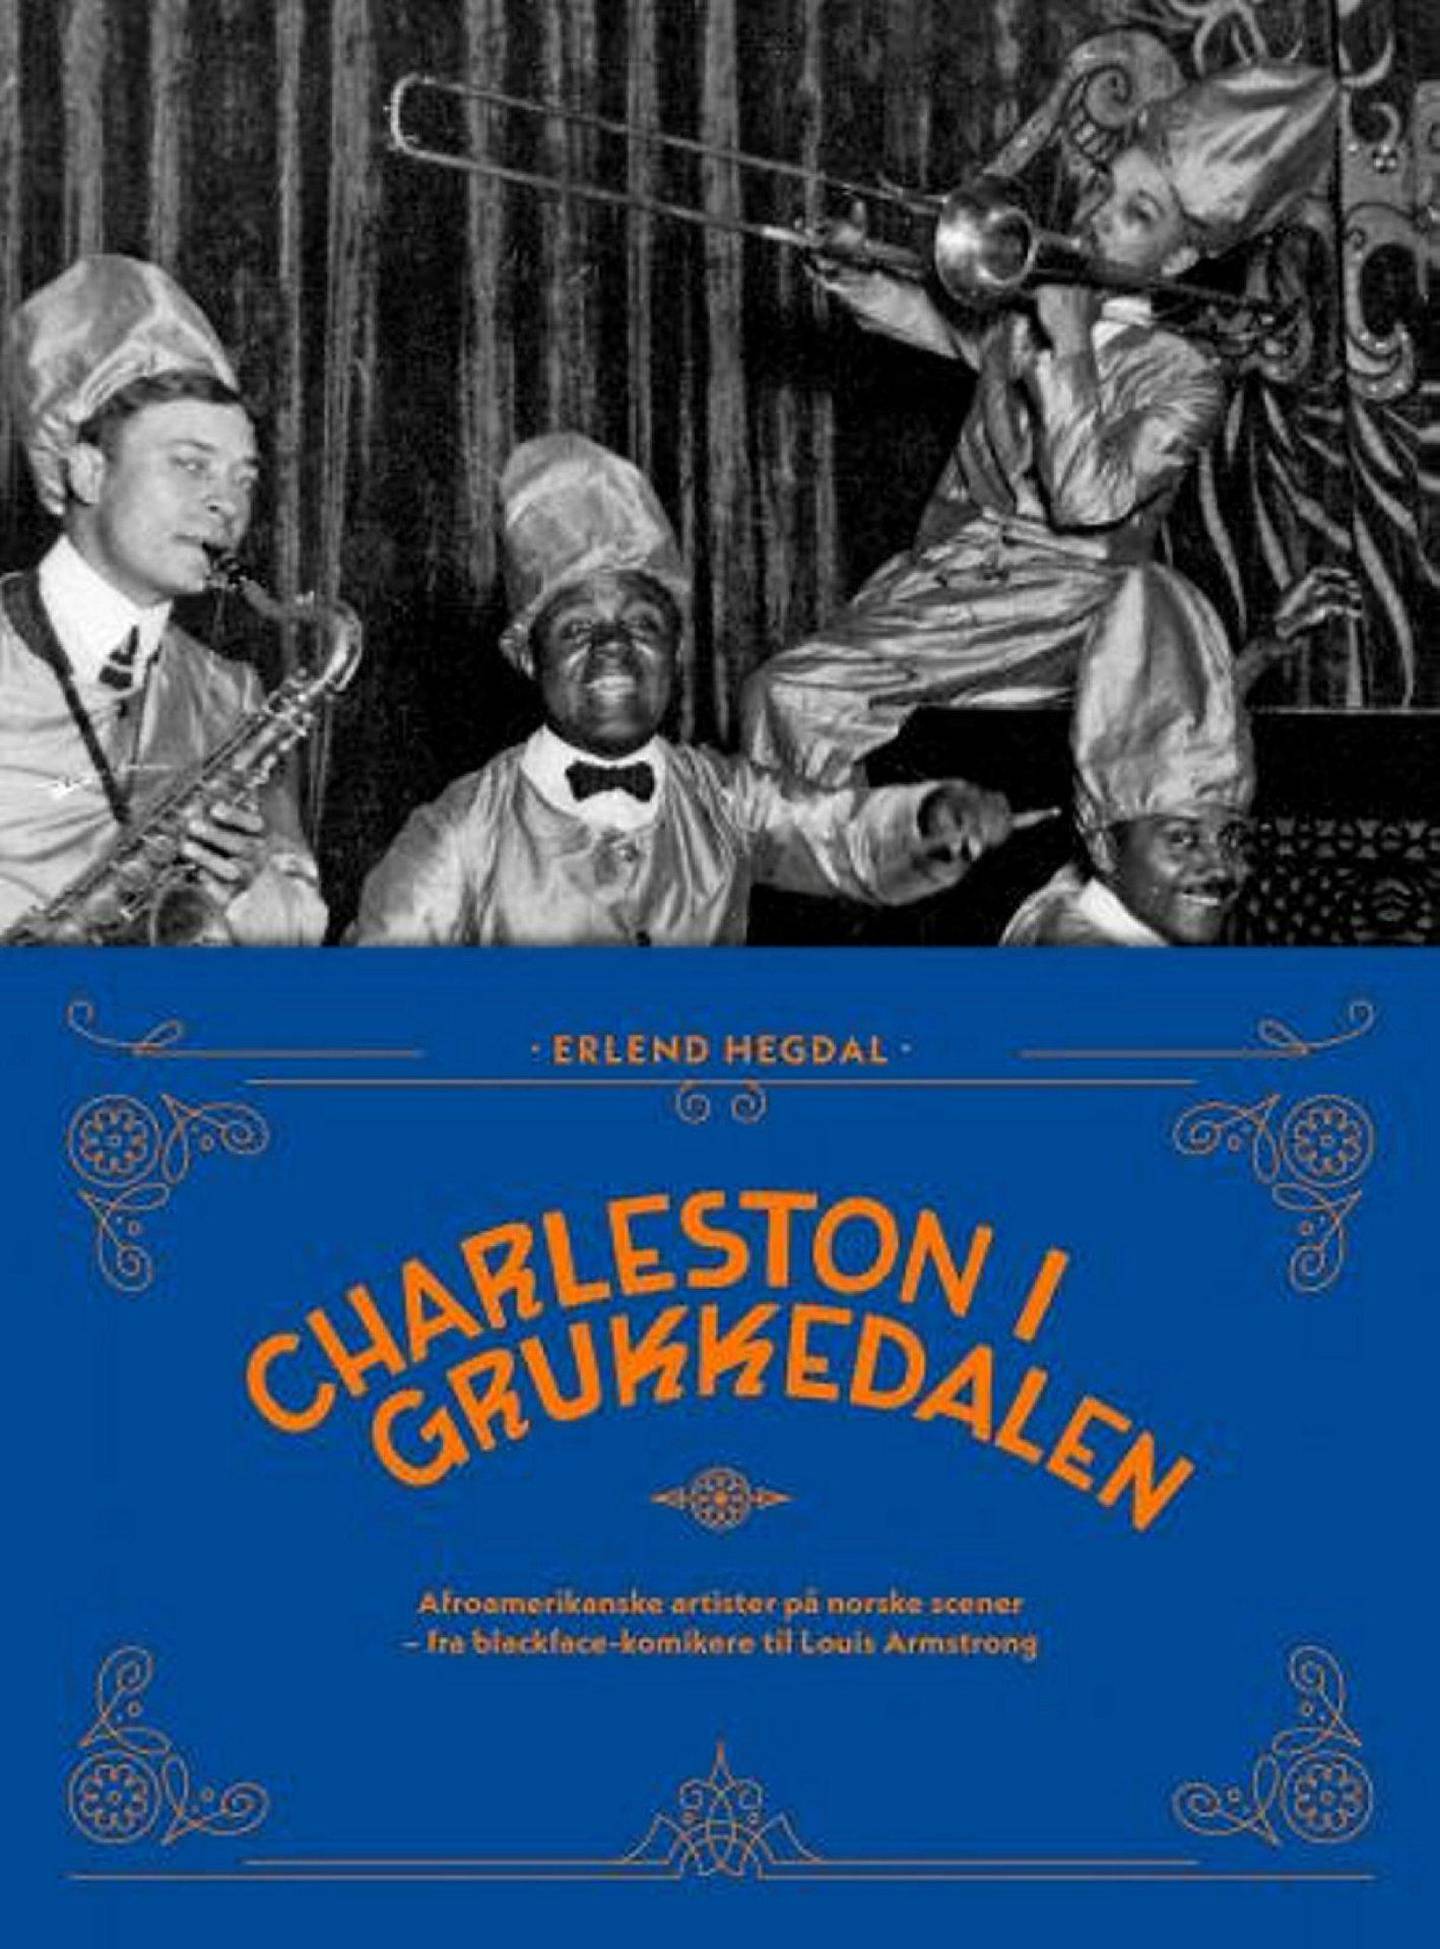 Erlend Hegdal,KUL Anm Musikk B:«Charleston i Grukkedalen»
KUL Anm Musikk C:Nasjonalbiblioteket